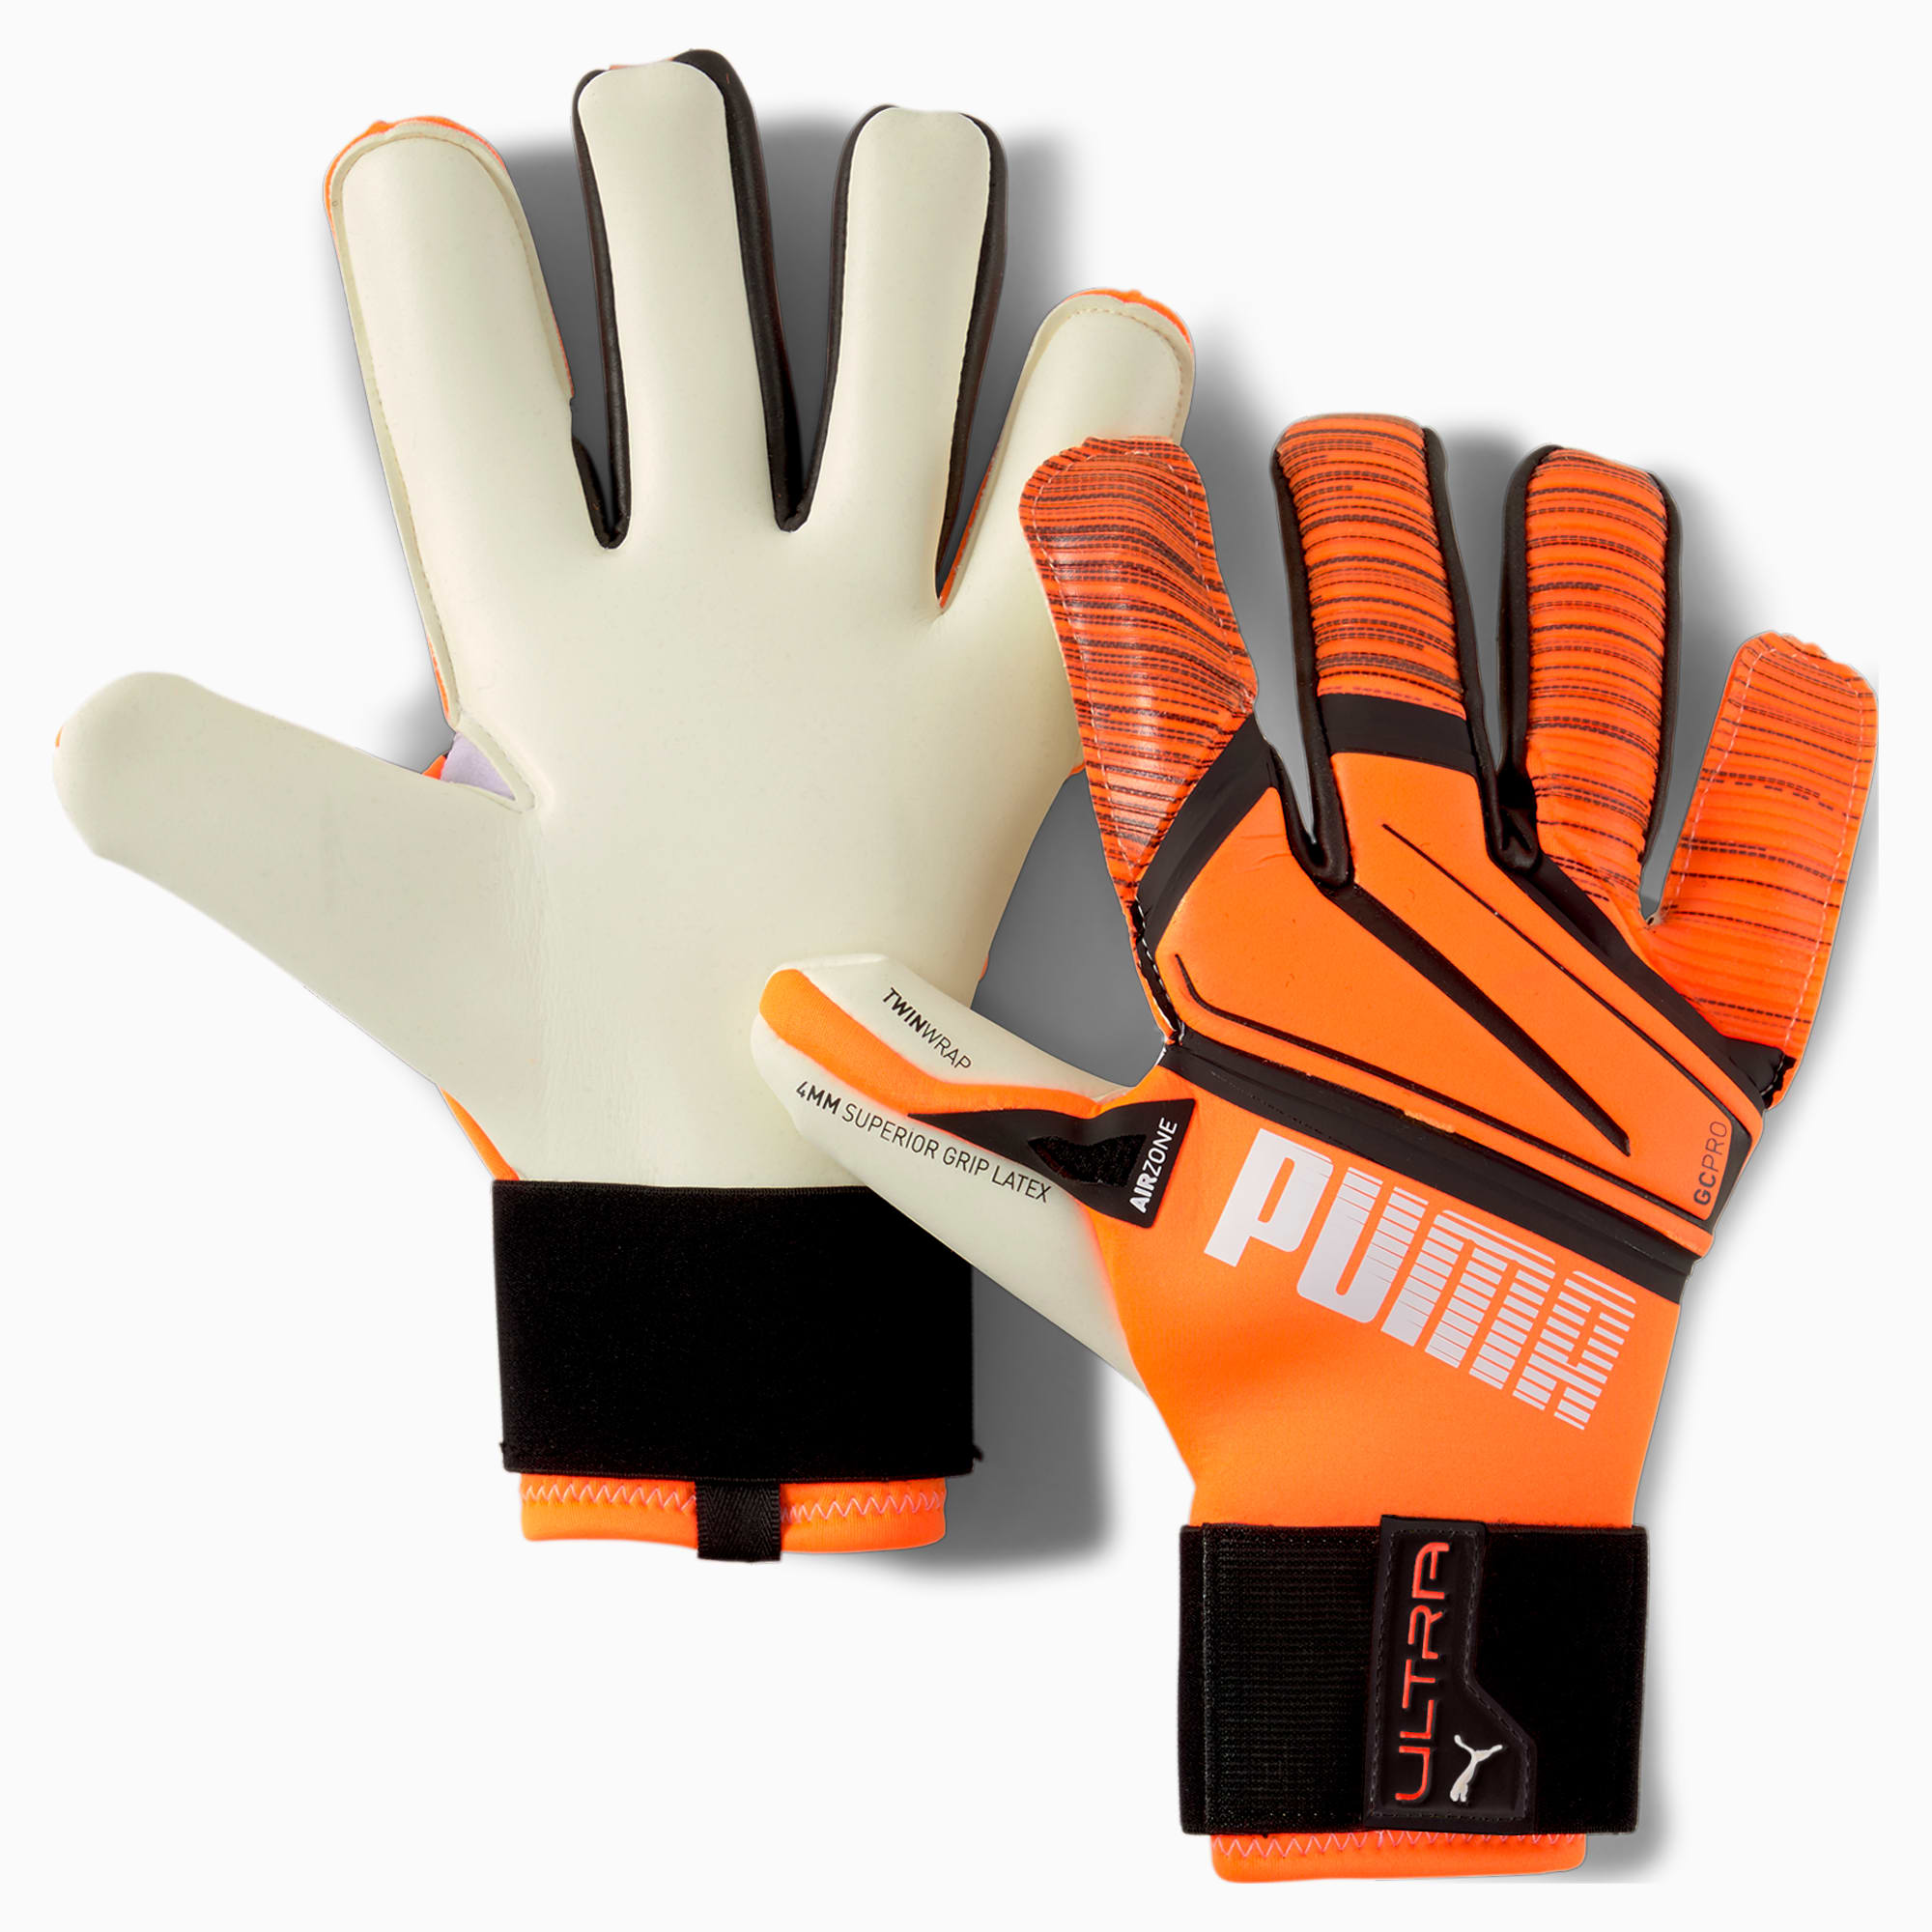 Gants de gardien de but PUMA ULTRA Grip 1 Hybrid Pro, Orange/Noir/Blanc, Taille 7, Accessoires